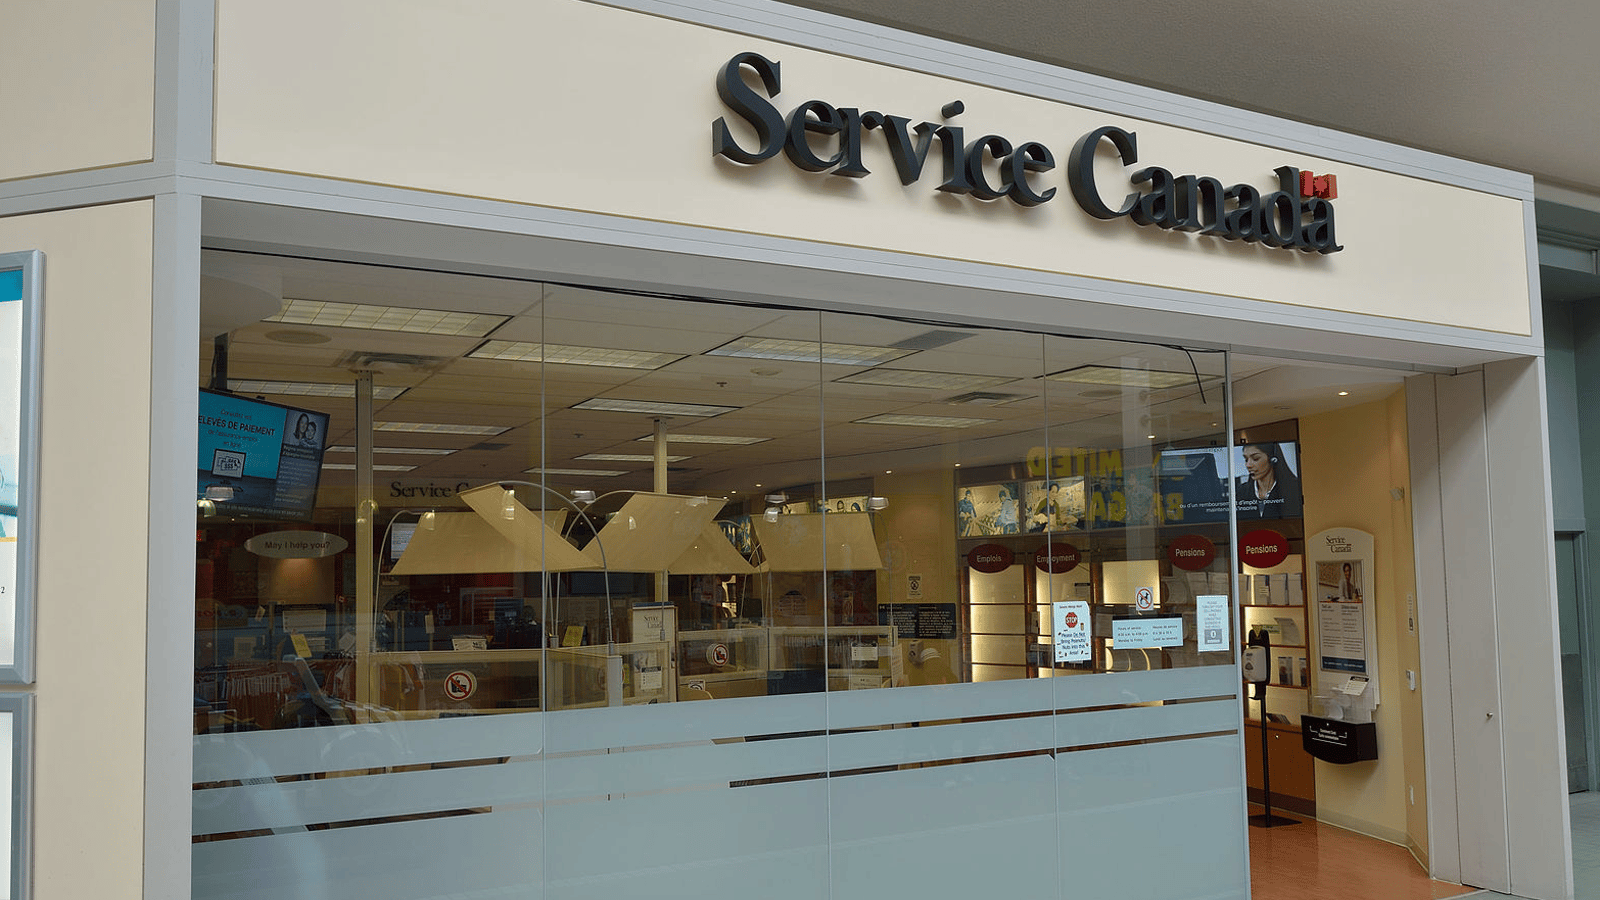 Service Canada offre des postes payant jusqu'à 65 000 $ par année sans études supérieures